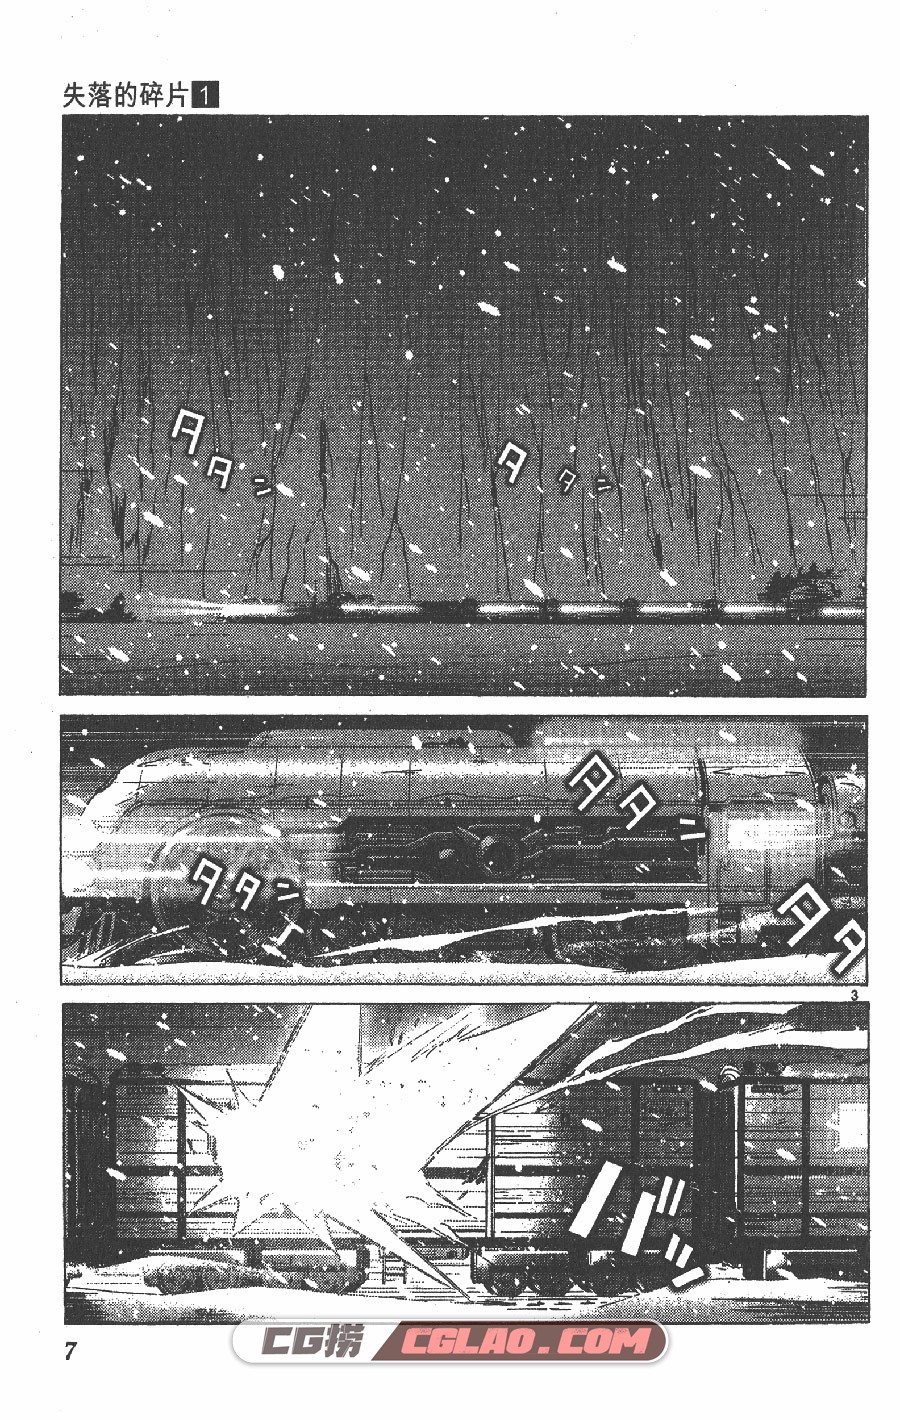 失落的碎片 高桥真 1-9卷 漫画完结全集下载 百度网盘,SLD01_003.jpg